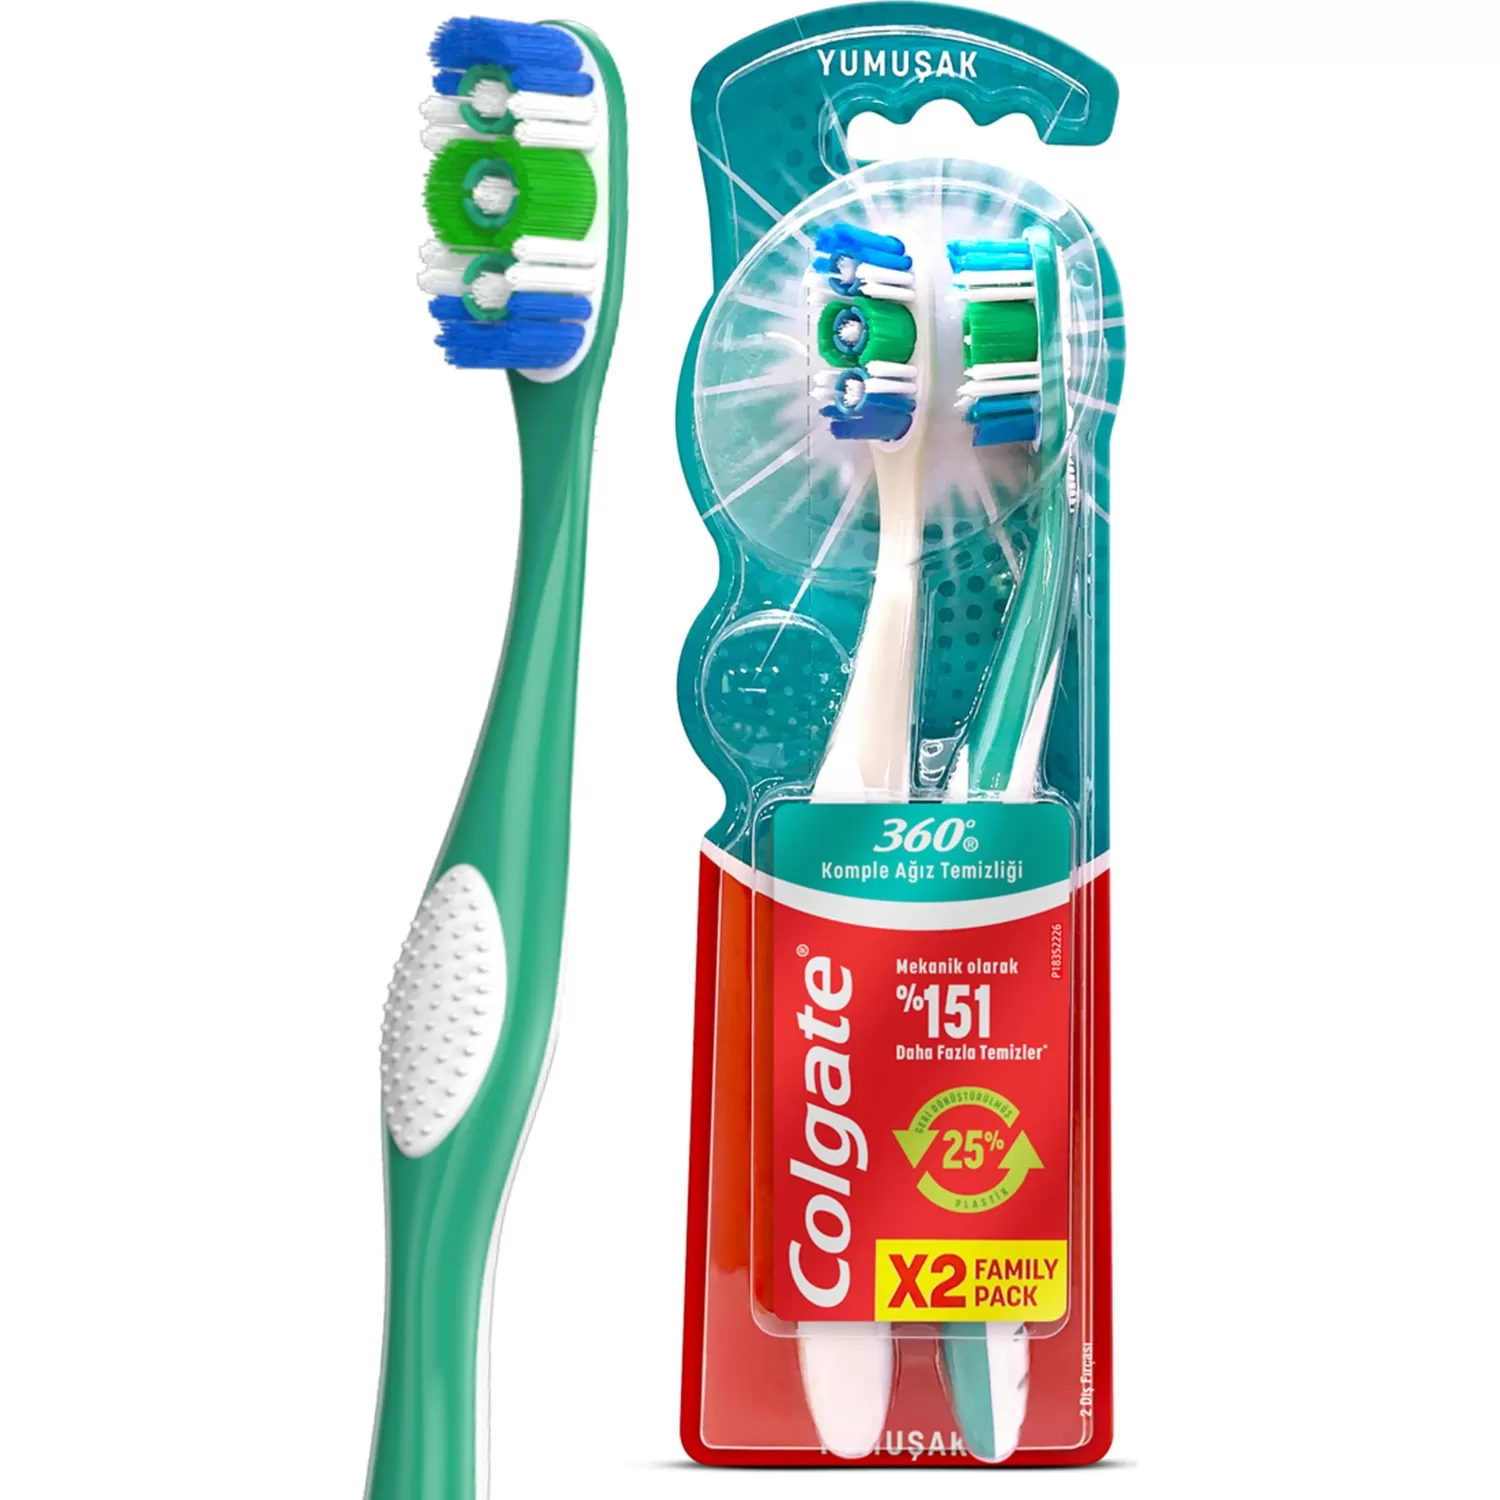 Colgate 360 Komple Ağız Temizliği Diş Fırça 1+1